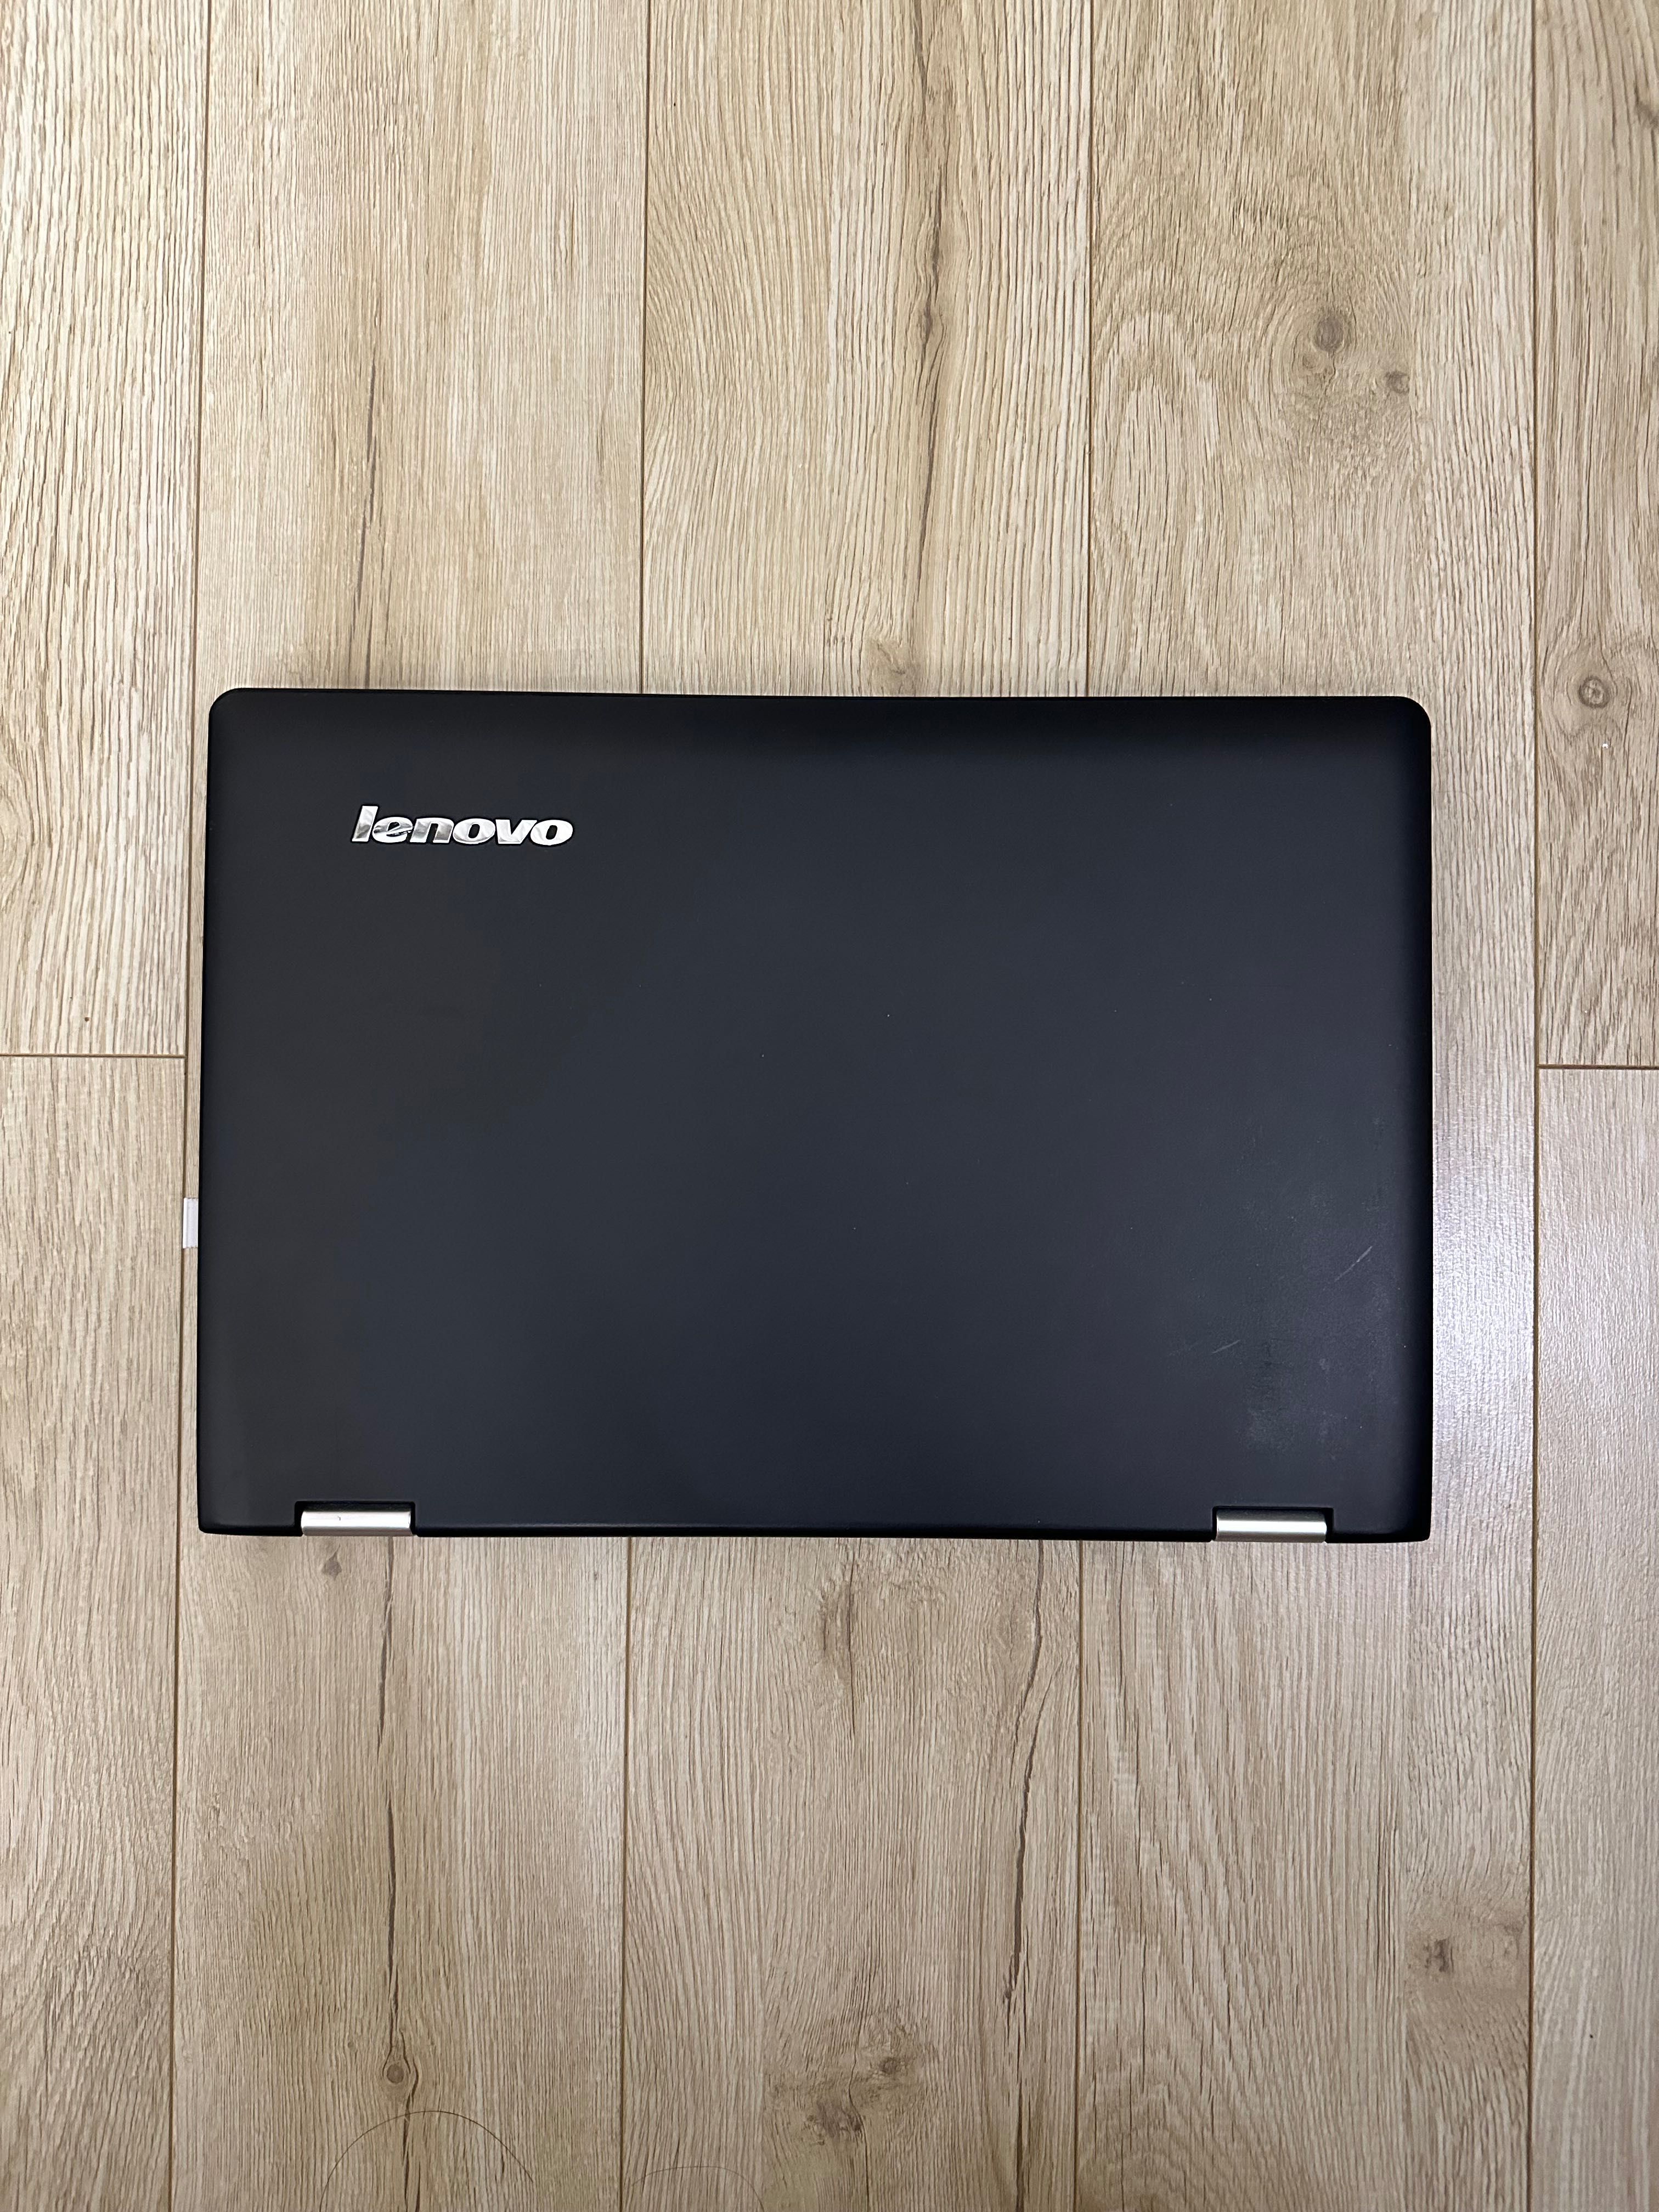 Продам сенсорный ноутбук — Lenovo yoga 500